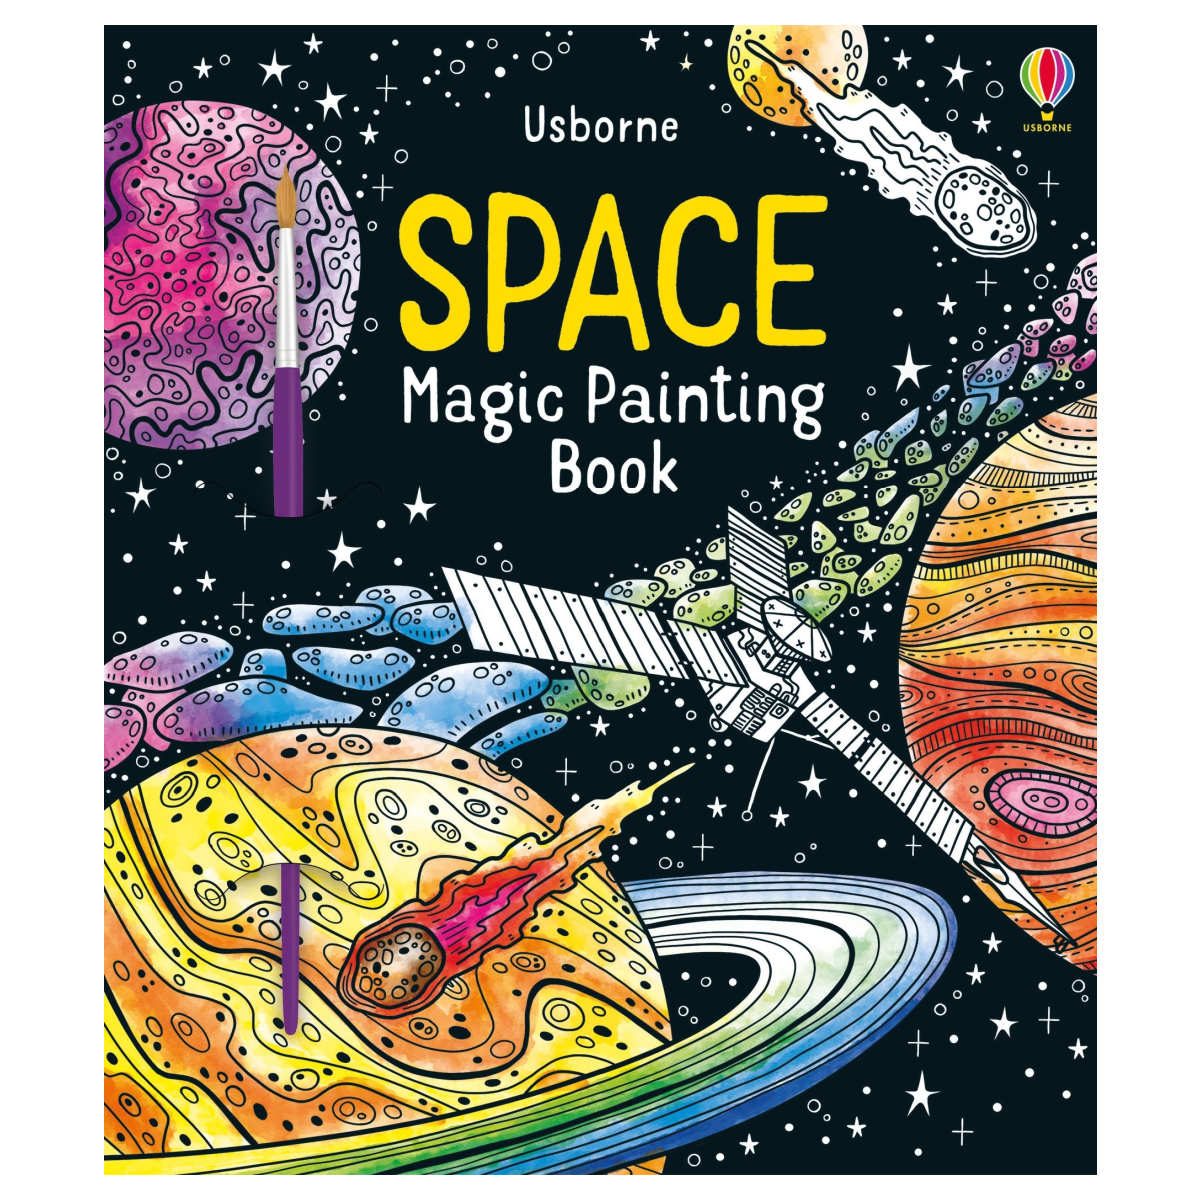 Usborne Books | Magic Painting Book - Space